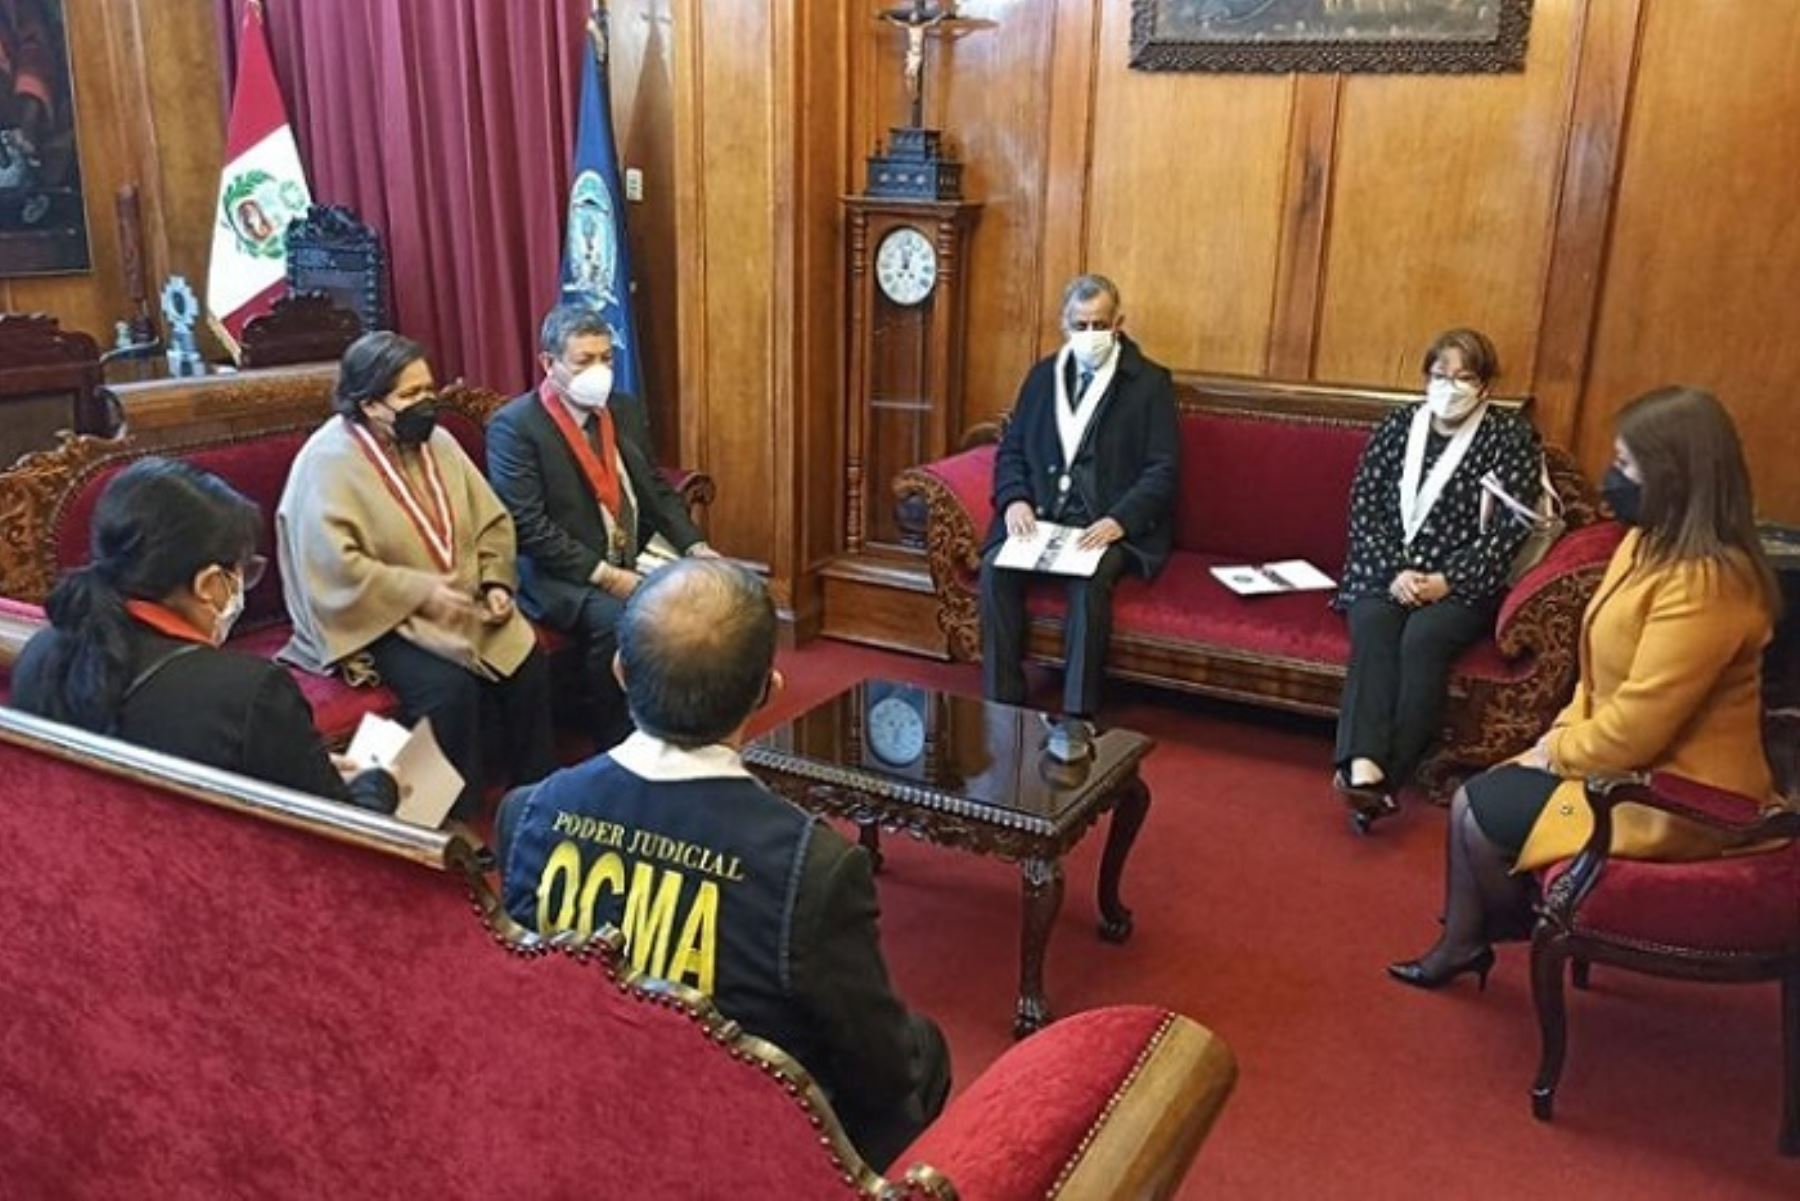 Jefa de Ocma hace “visita extraordinaria” en Corte de Justicia del Cusco